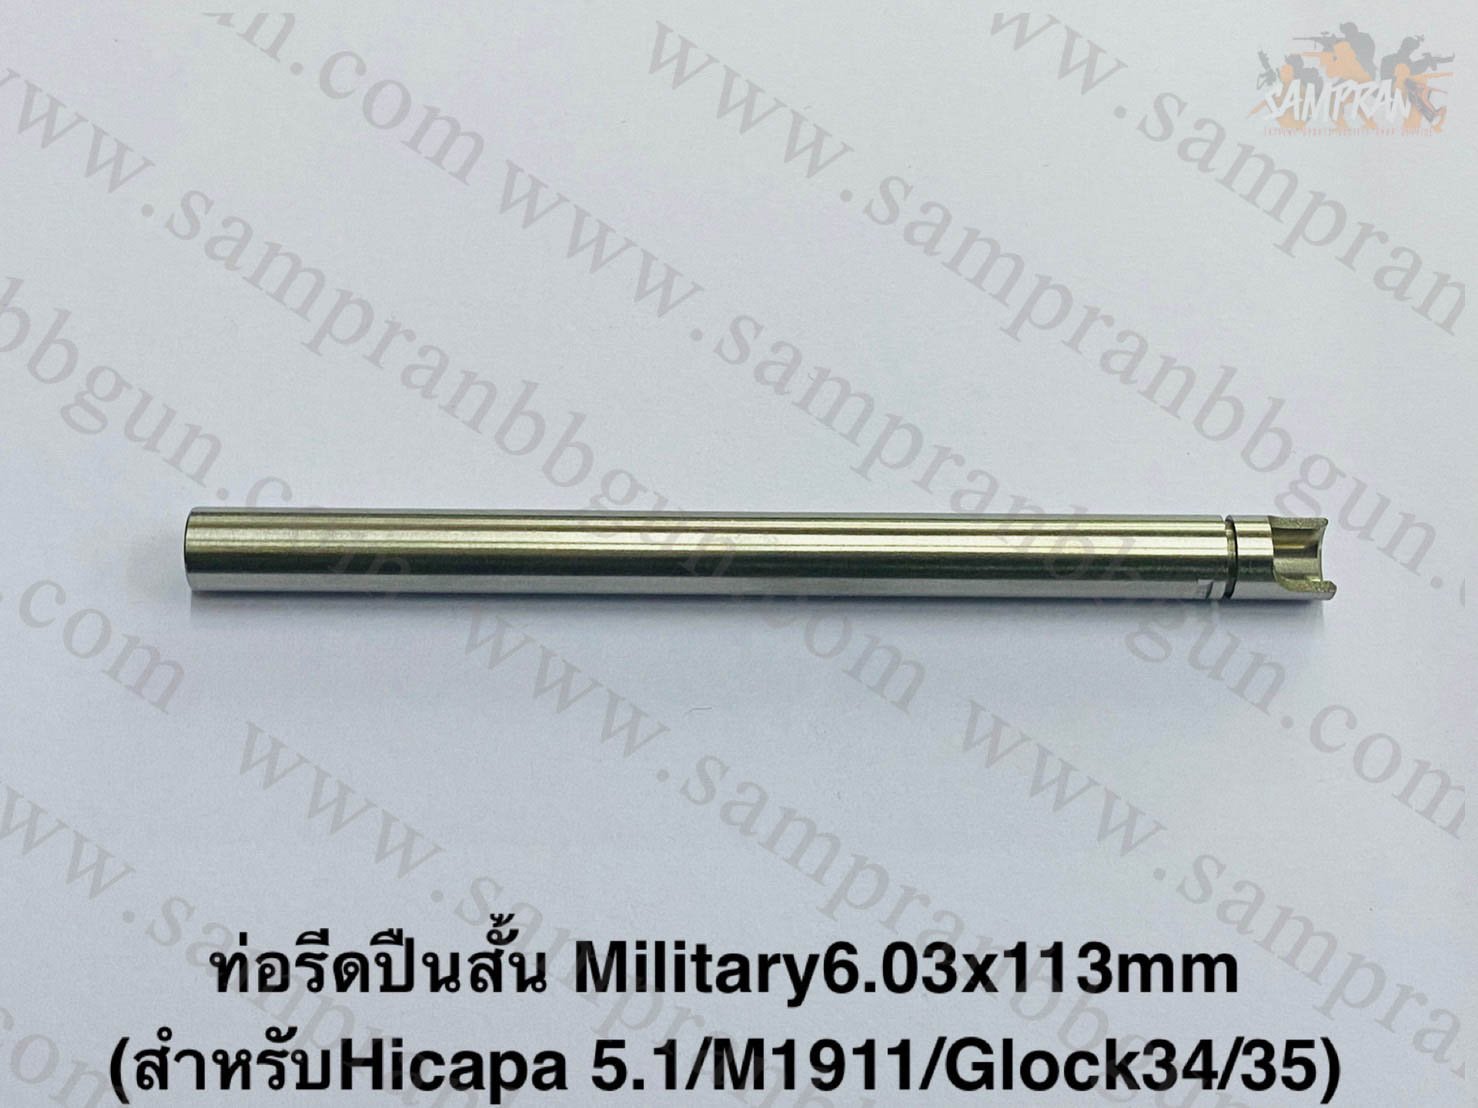 ท่อรีด Military BARREL 6.03x113mm